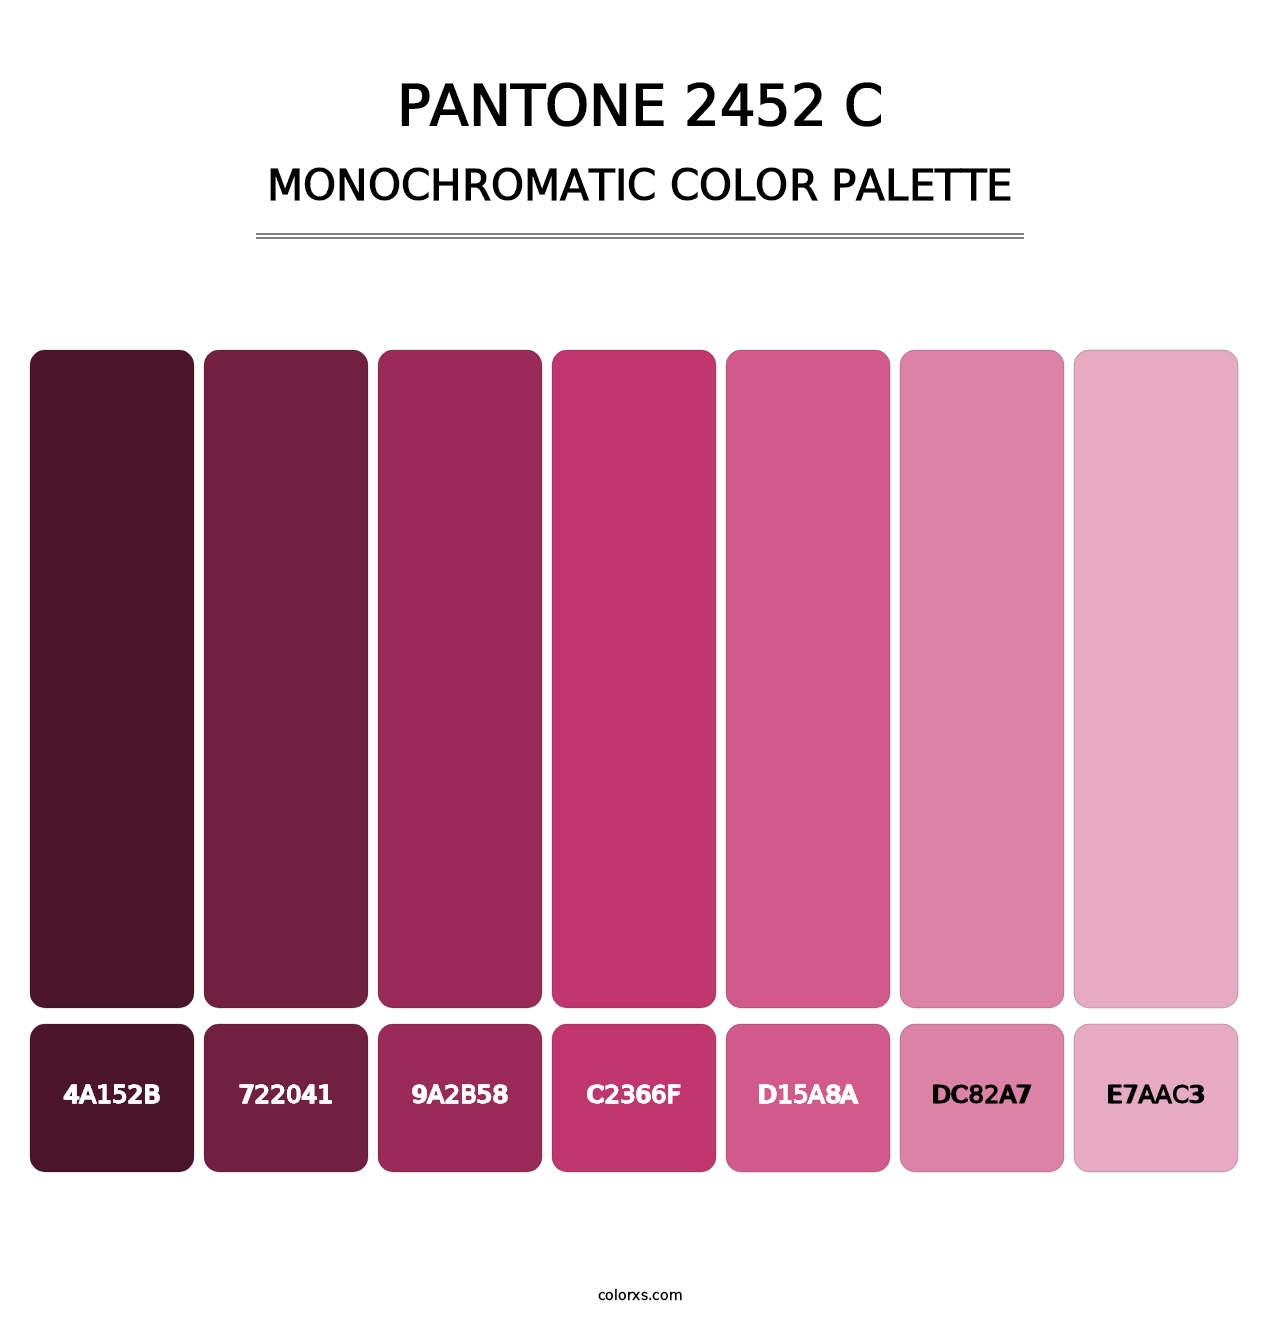 PANTONE 2452 C - Monochromatic Color Palette